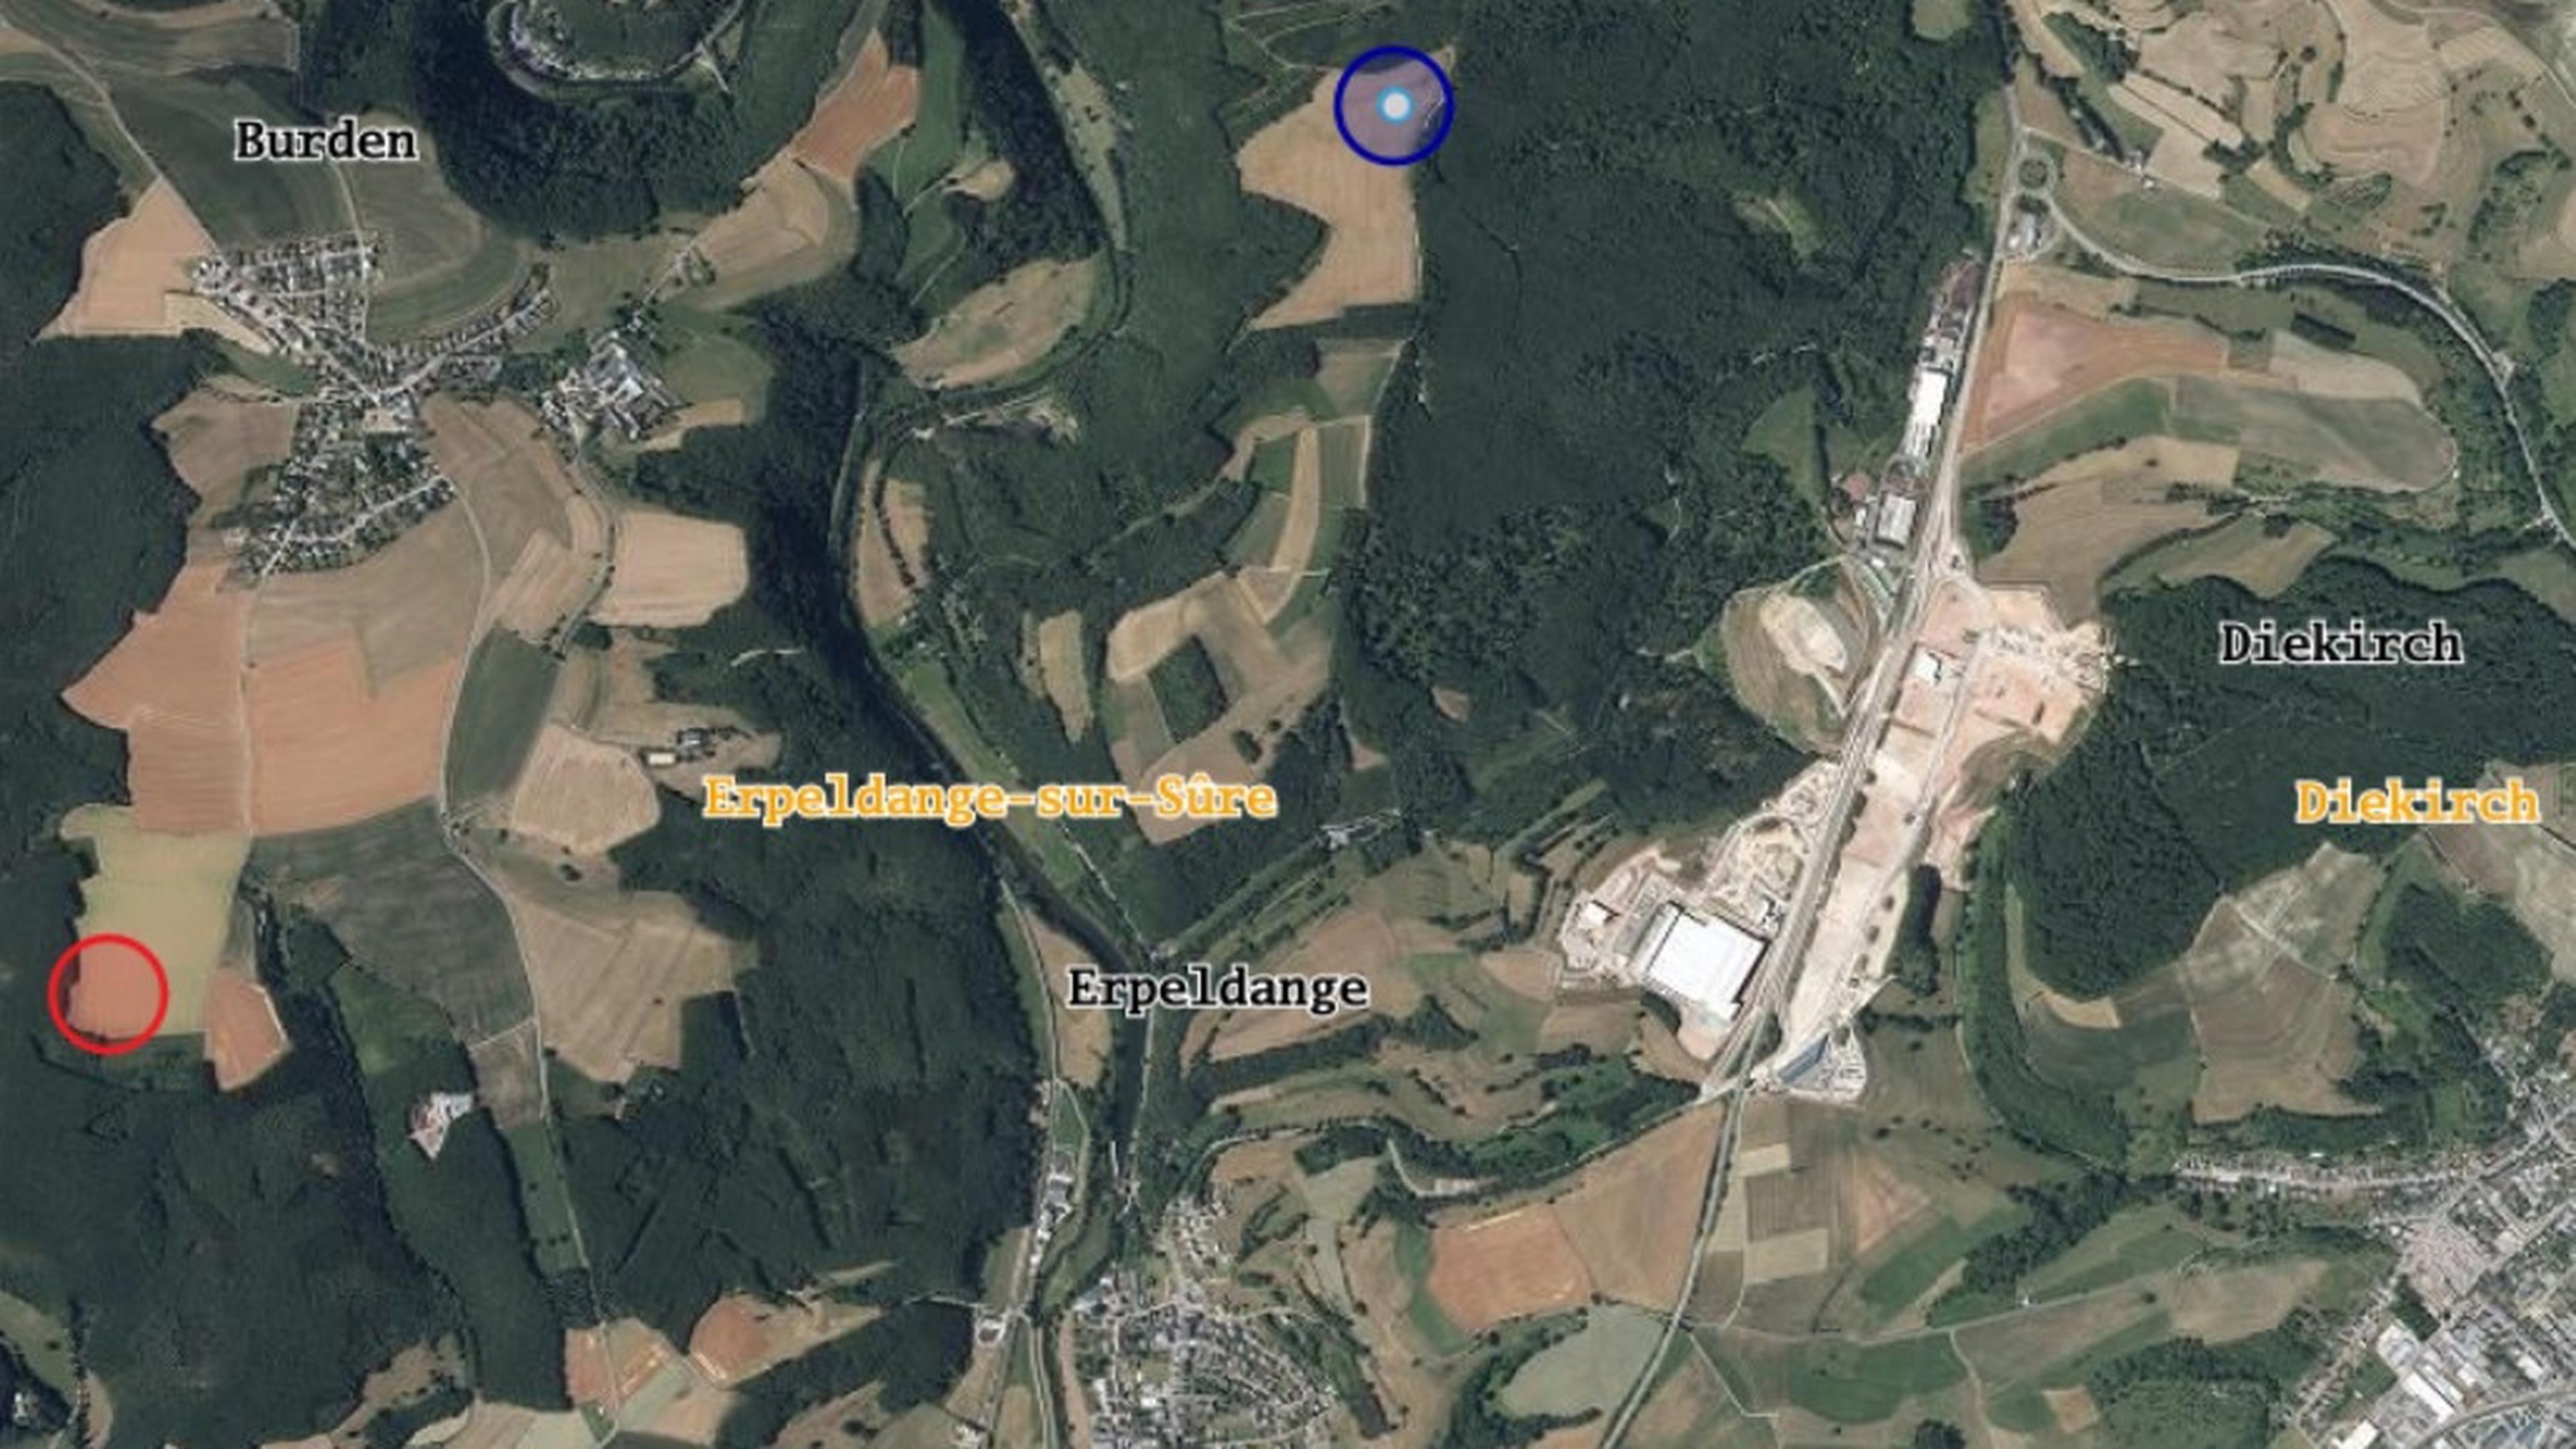 In Rot der geplante Standort für die Windkraftanlage unterhalb von Bürden. Jüngst hatte die Gemeinde Erpeldingen/Sauer nun aber einen Alternativstandort (blau) vorgeschlagen, der weiter von den nächsten Wohngebieten entfernt läge.